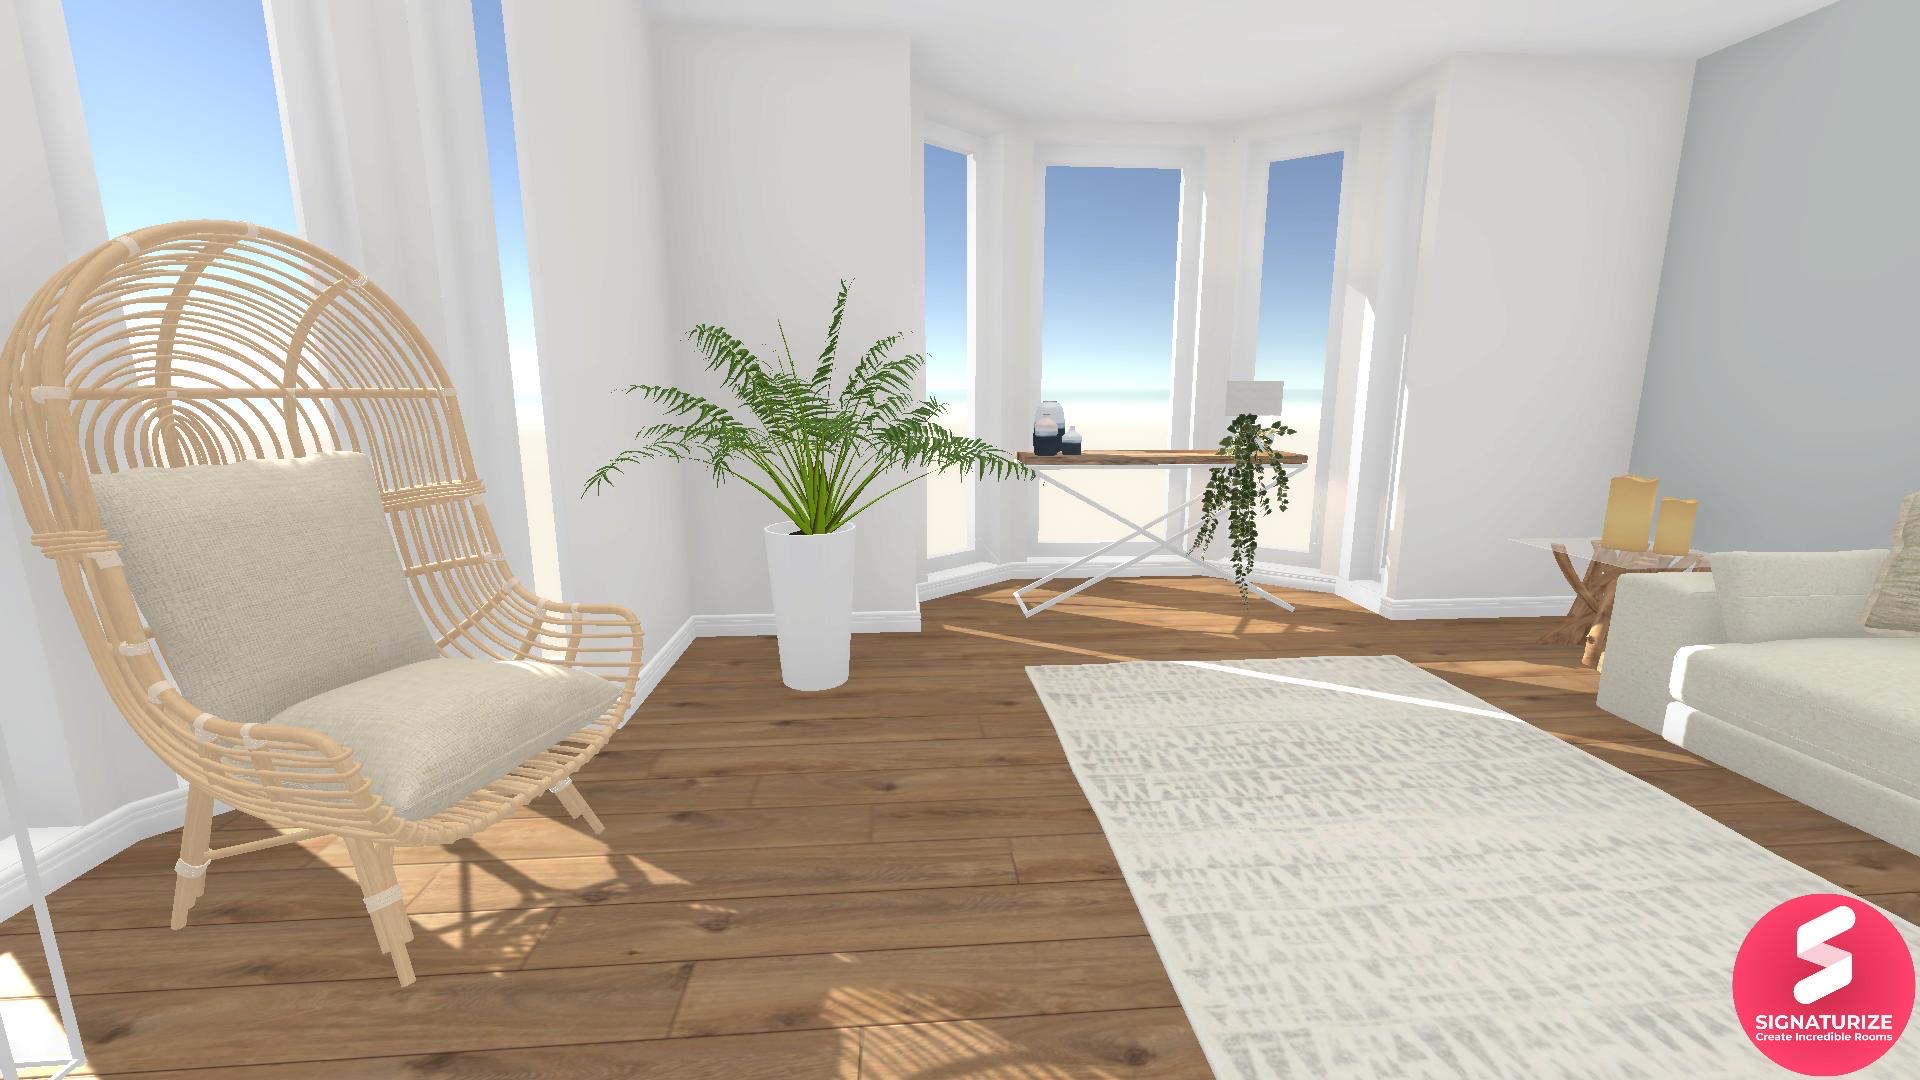 Beautiful minimalist boho living room idea